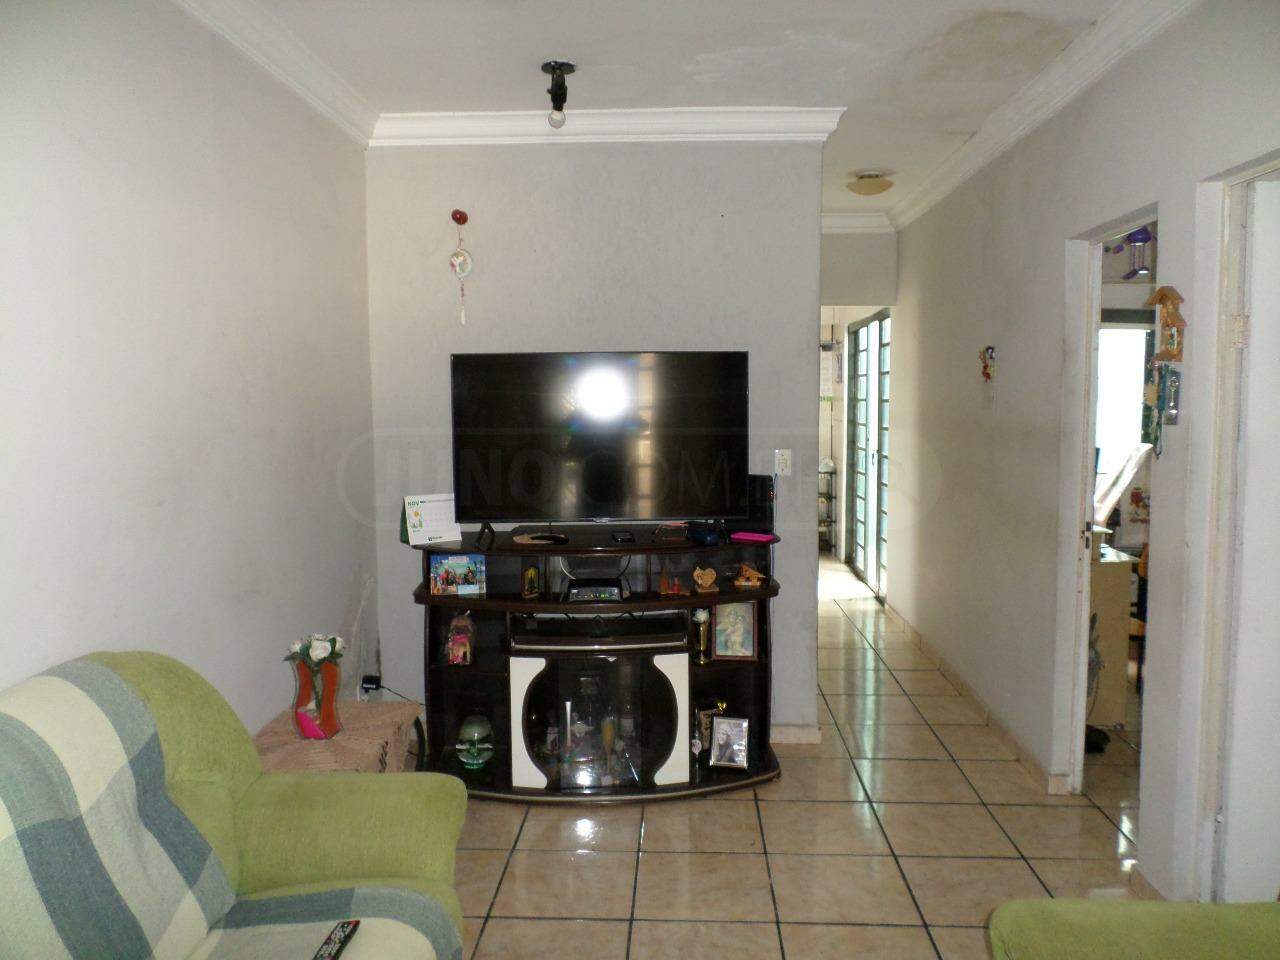 Casa à venda, 3 quartos, 2 vagas, no bairro Jardim Ipanema em Piracicaba - SP